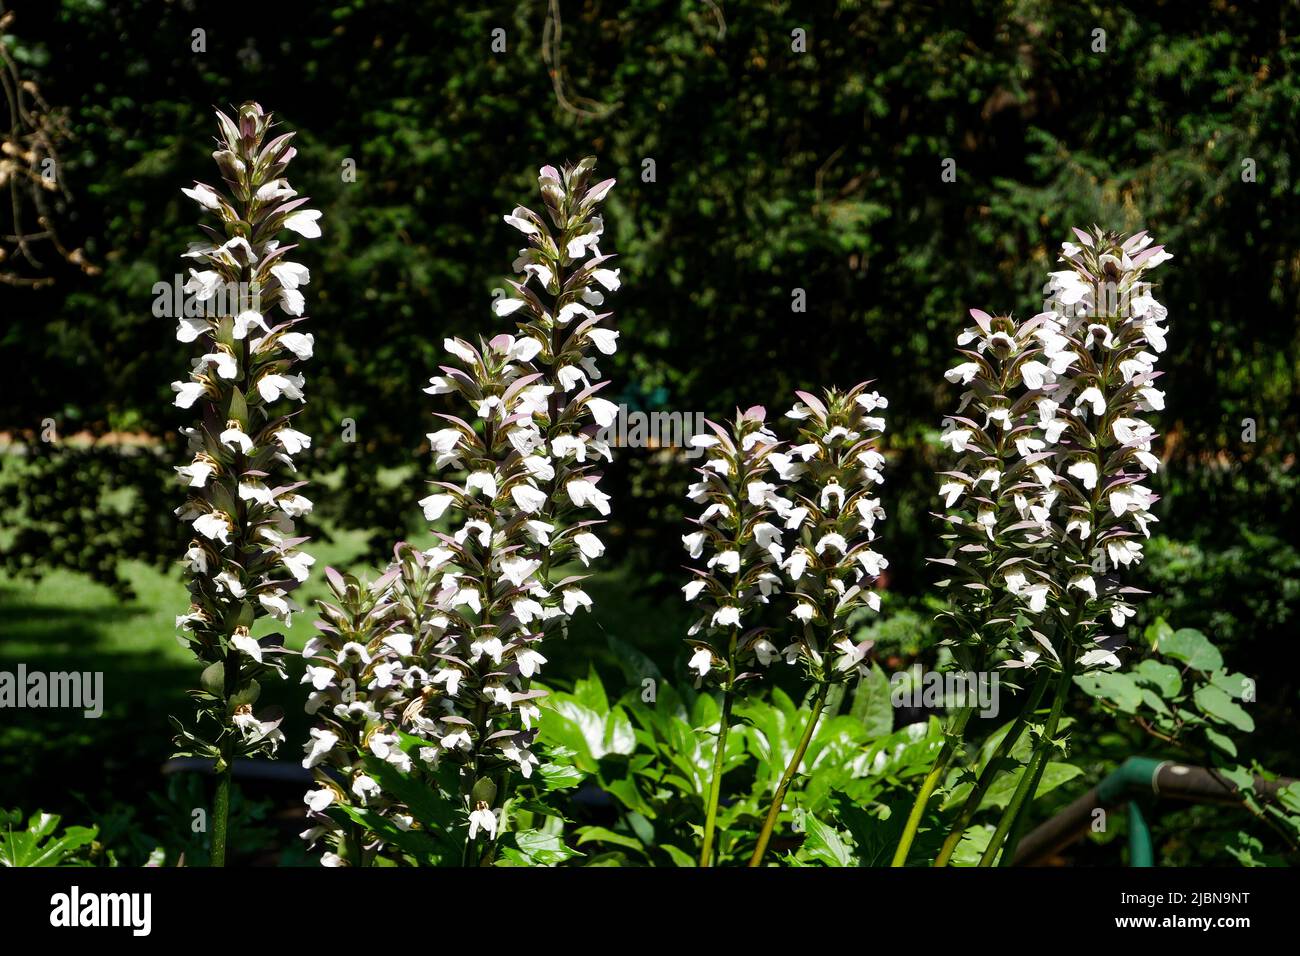 Acanthus flowers, Cerisaie Park, Lyon, Rhône department, AURA Region, France Stock Photo